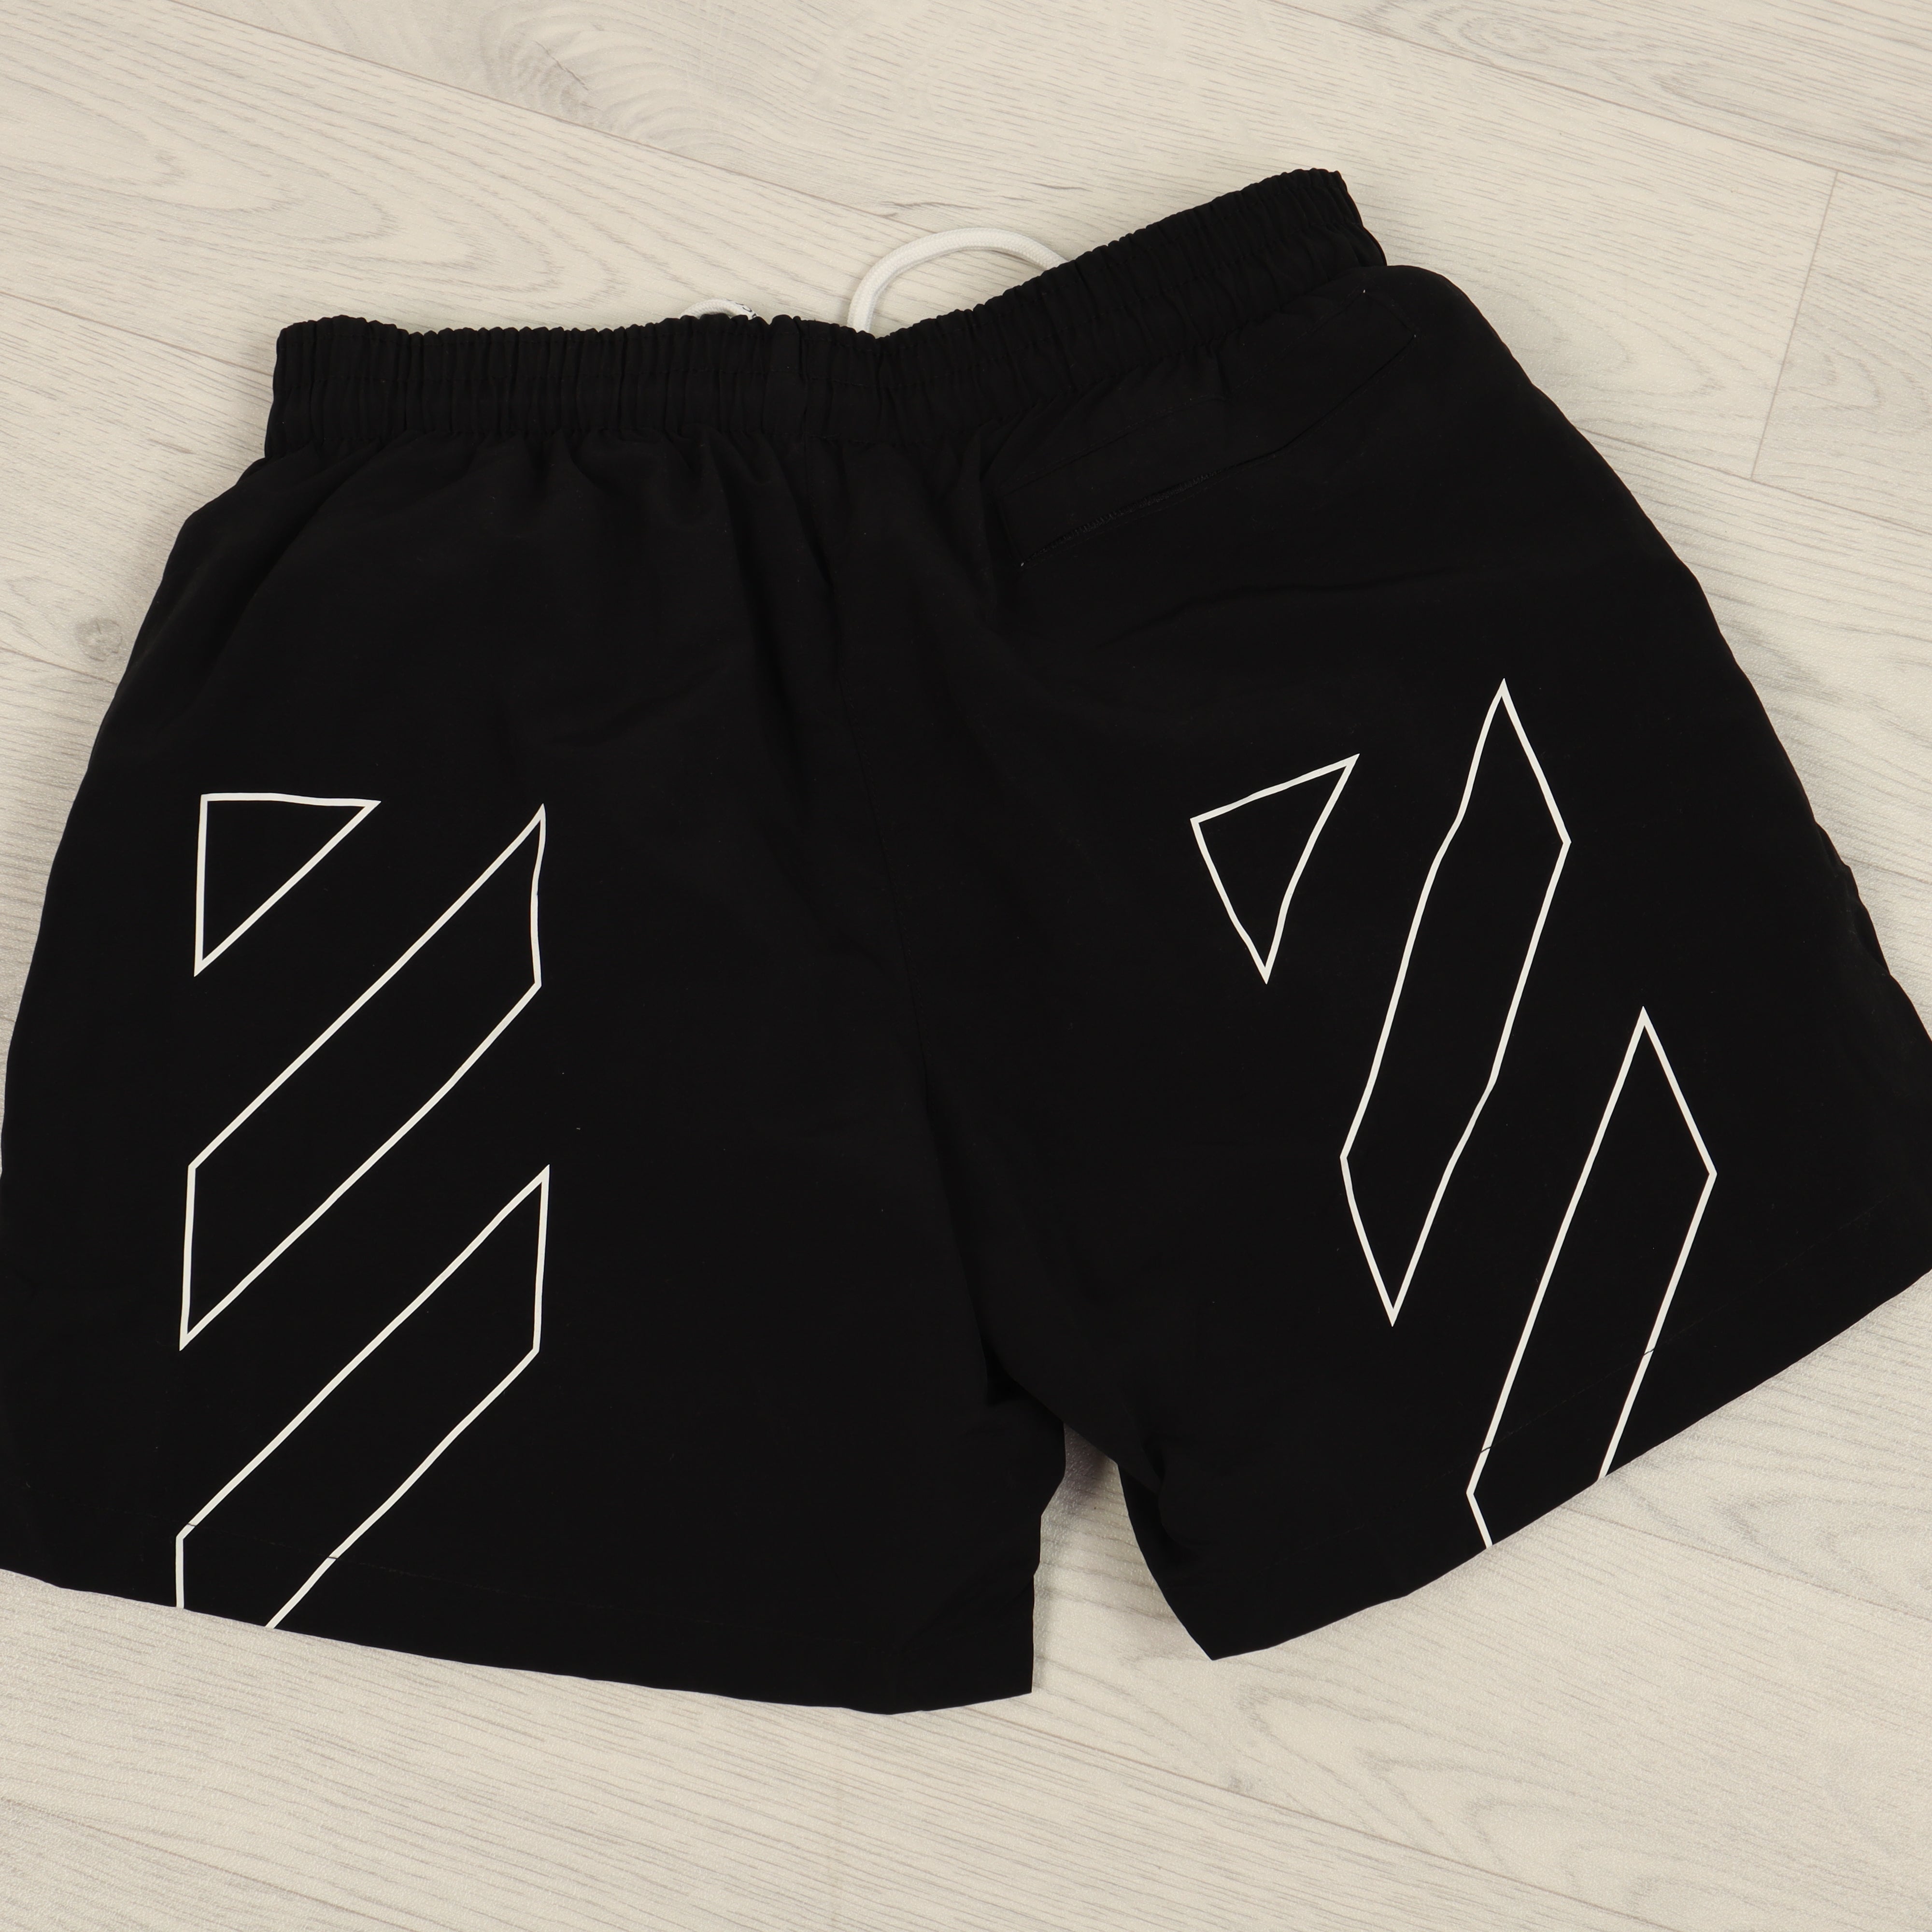 Black Diagonal Stripe Swims Shorts.